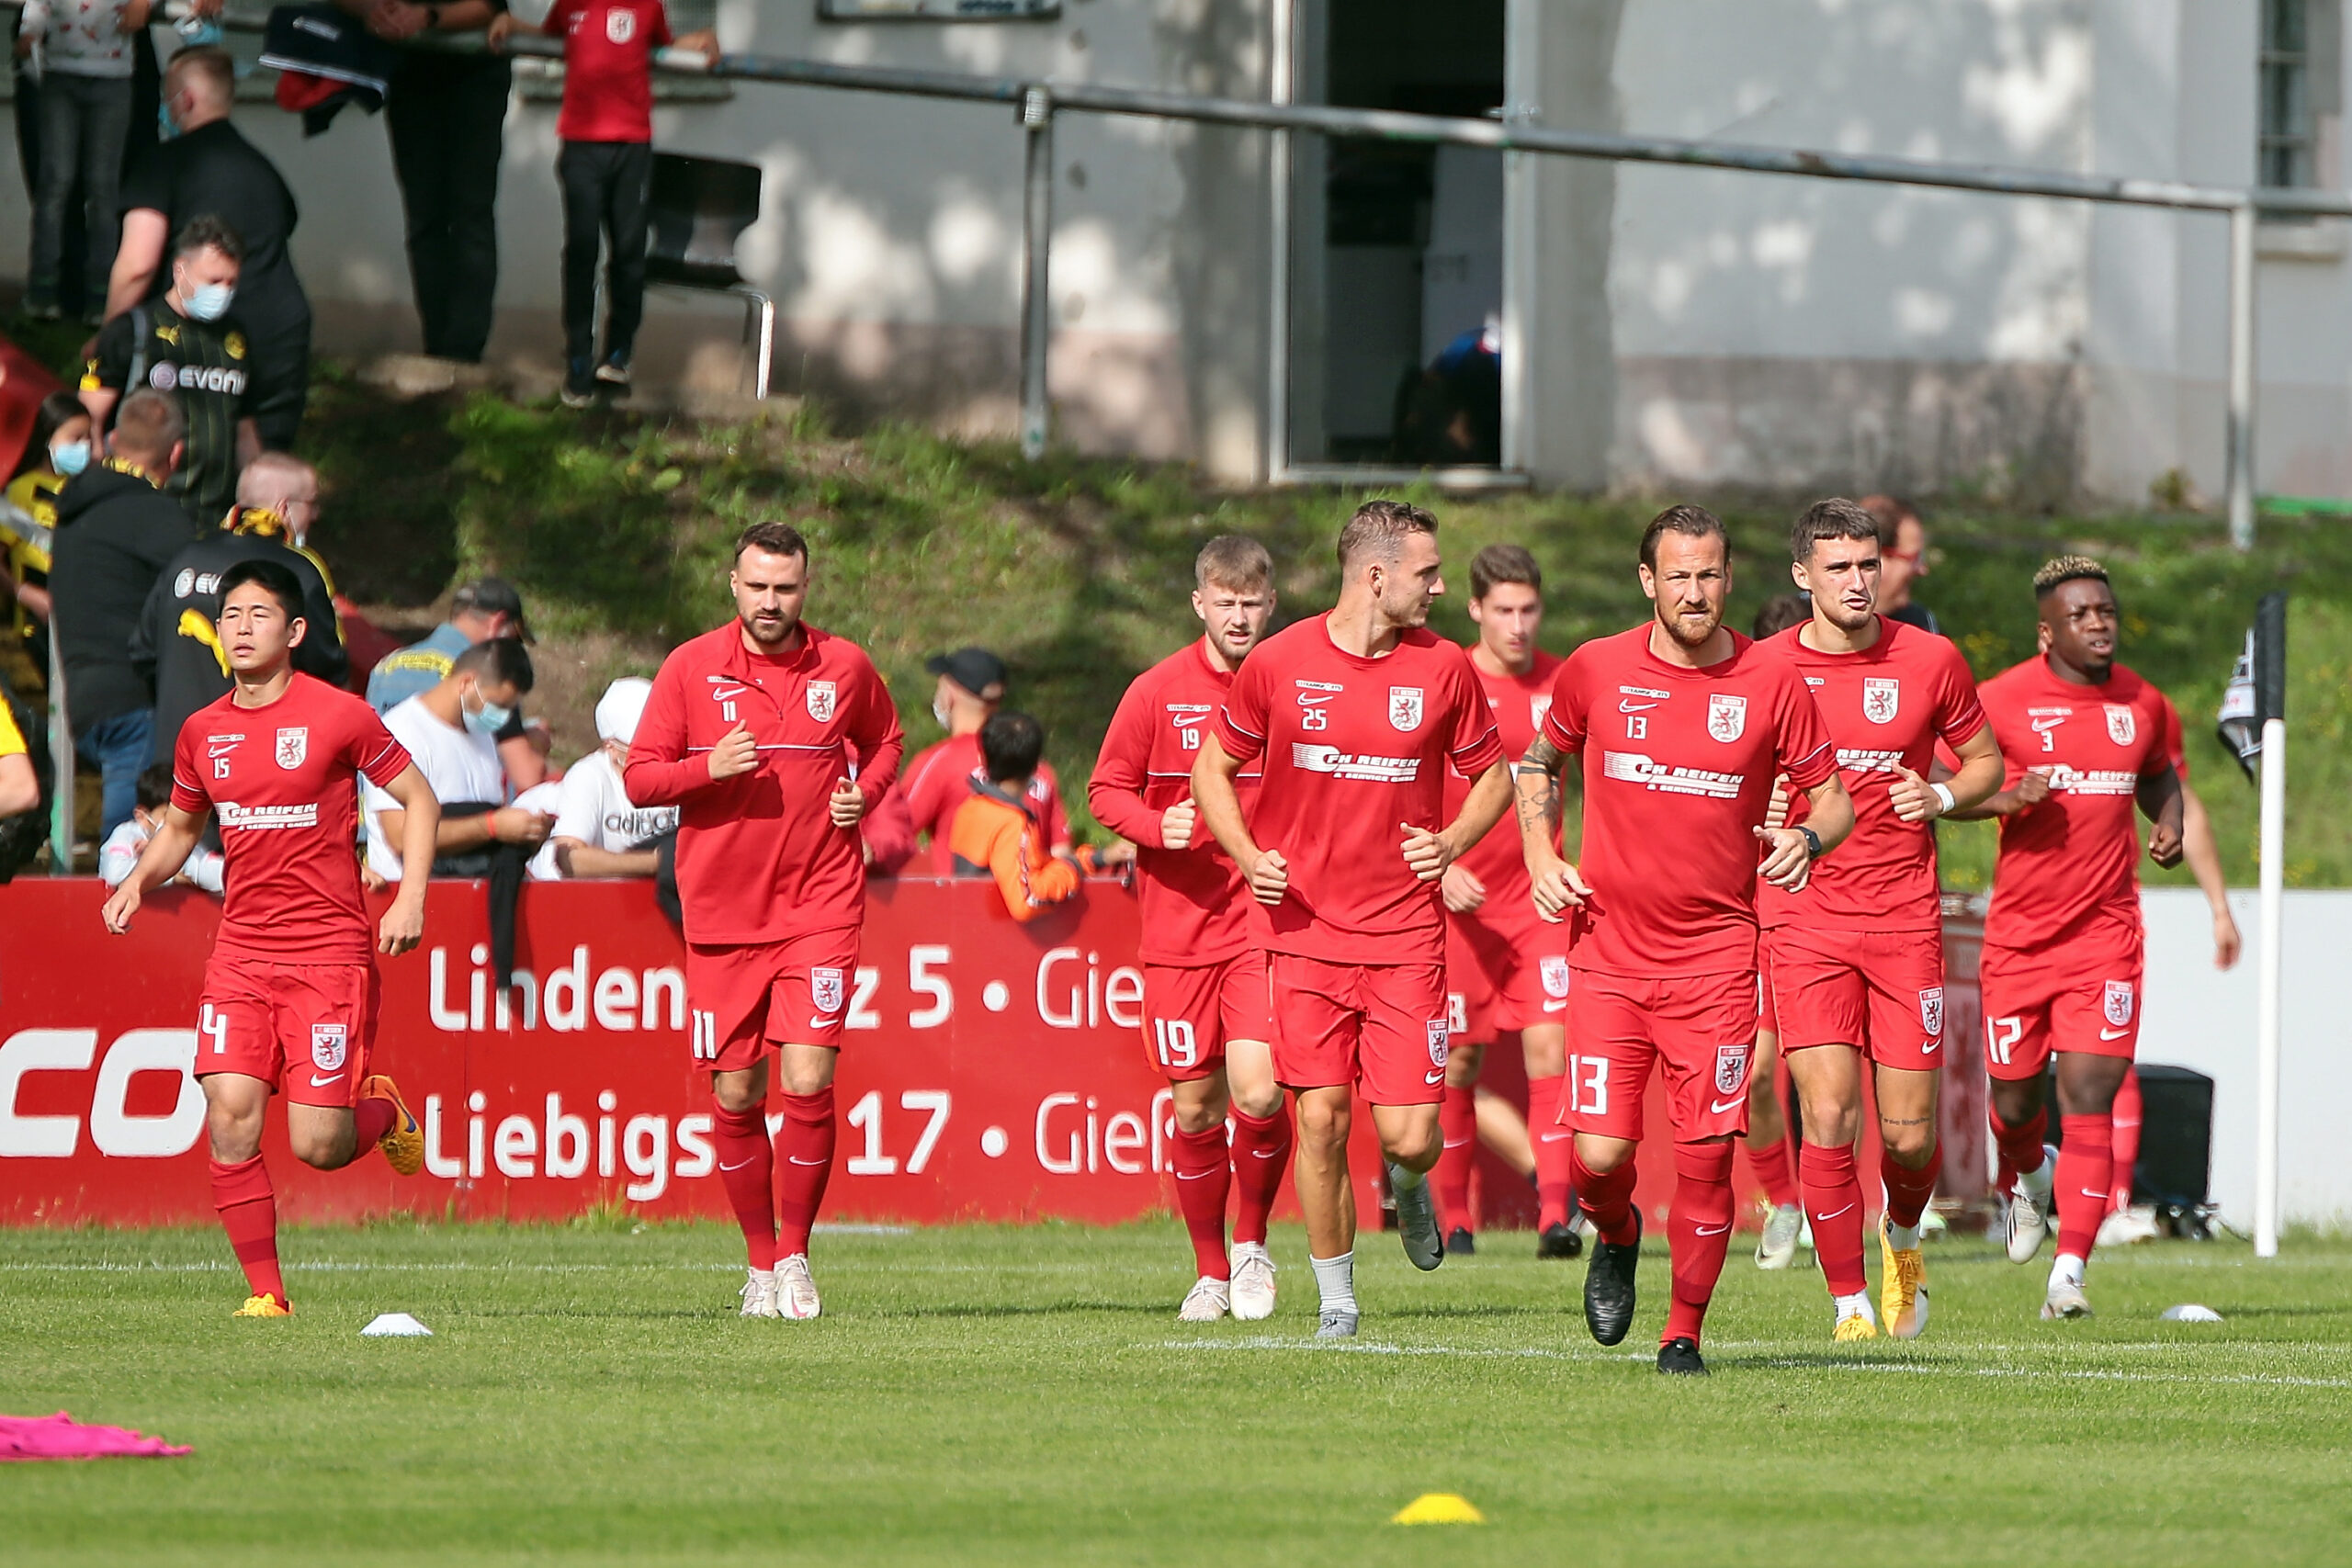 Herzlich willkommen auf der Homepage des FC Gießen